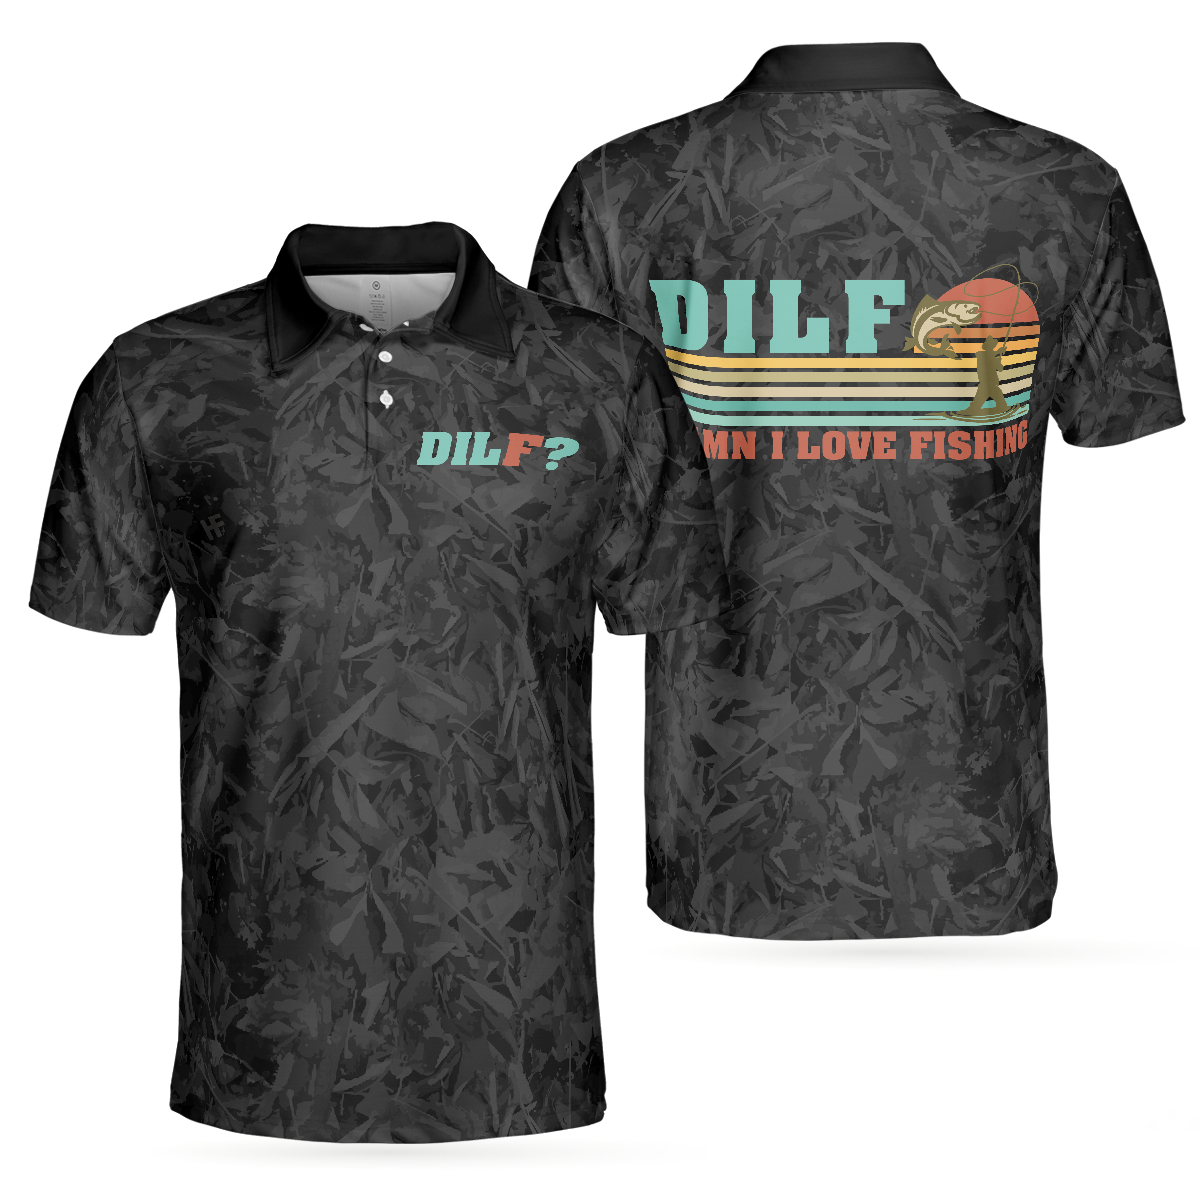 DILF Damn I Love Fishing Polo Shirt, Short Sleeve Black Fishing Shirt For Men, Best Gift For Men, Gift For Fishing Lovers